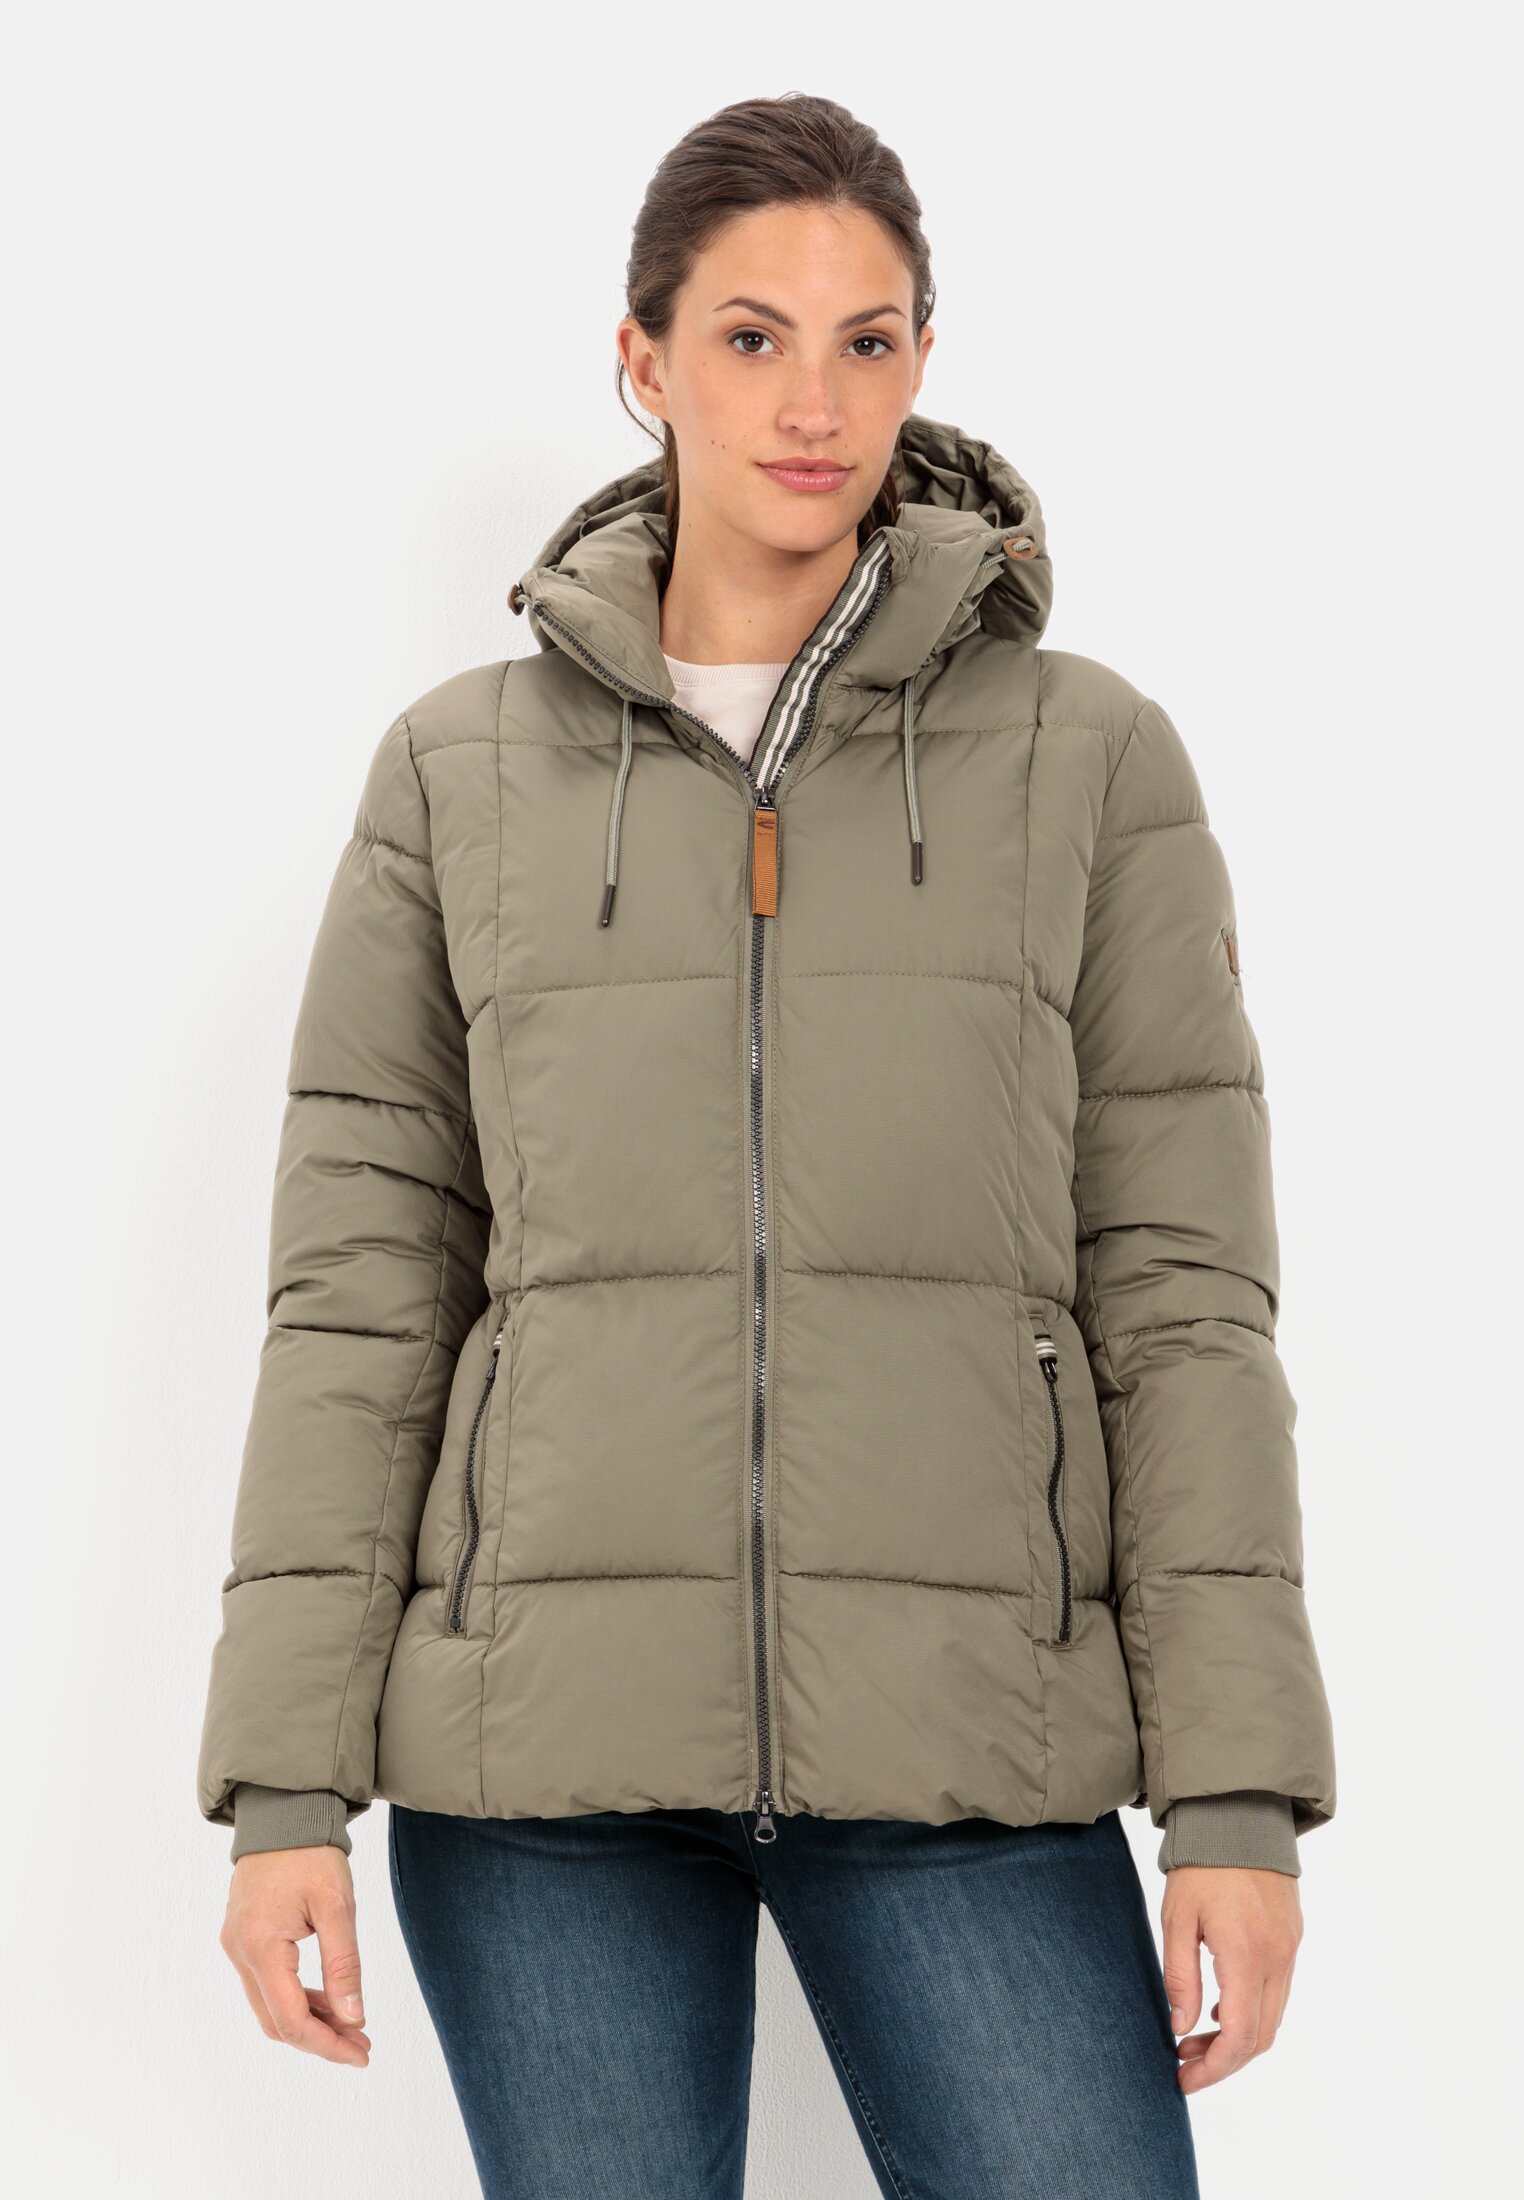 Women's winter jackets online | camel active